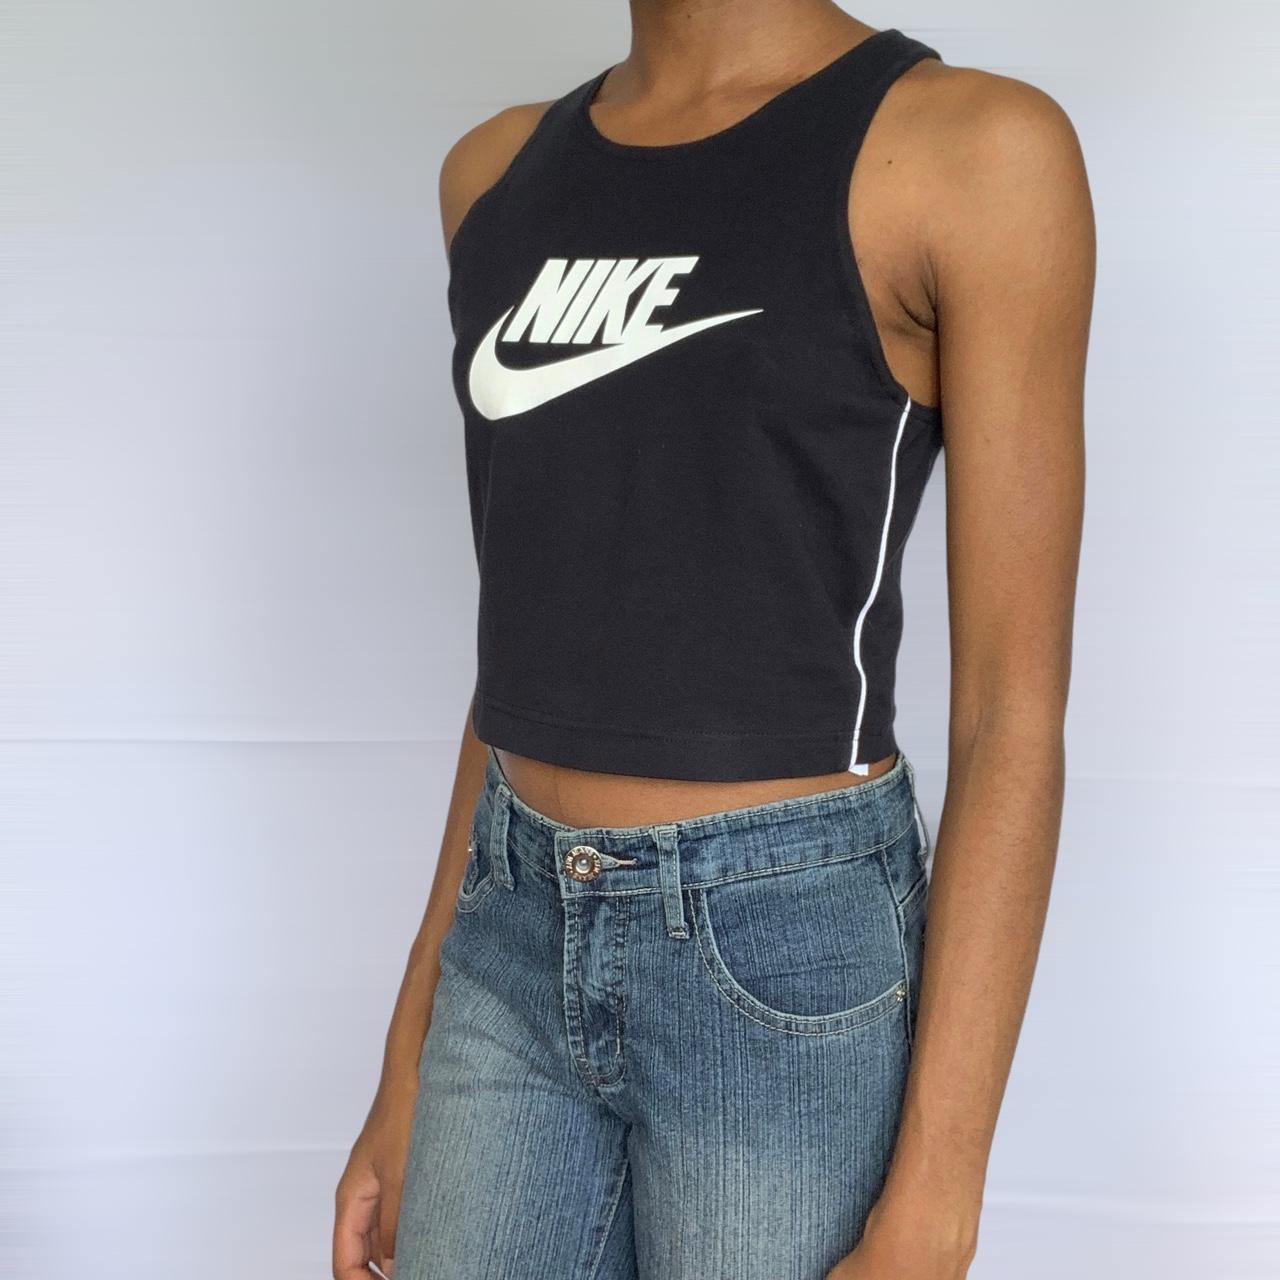 Nike Women's Black and White Vest | Depop